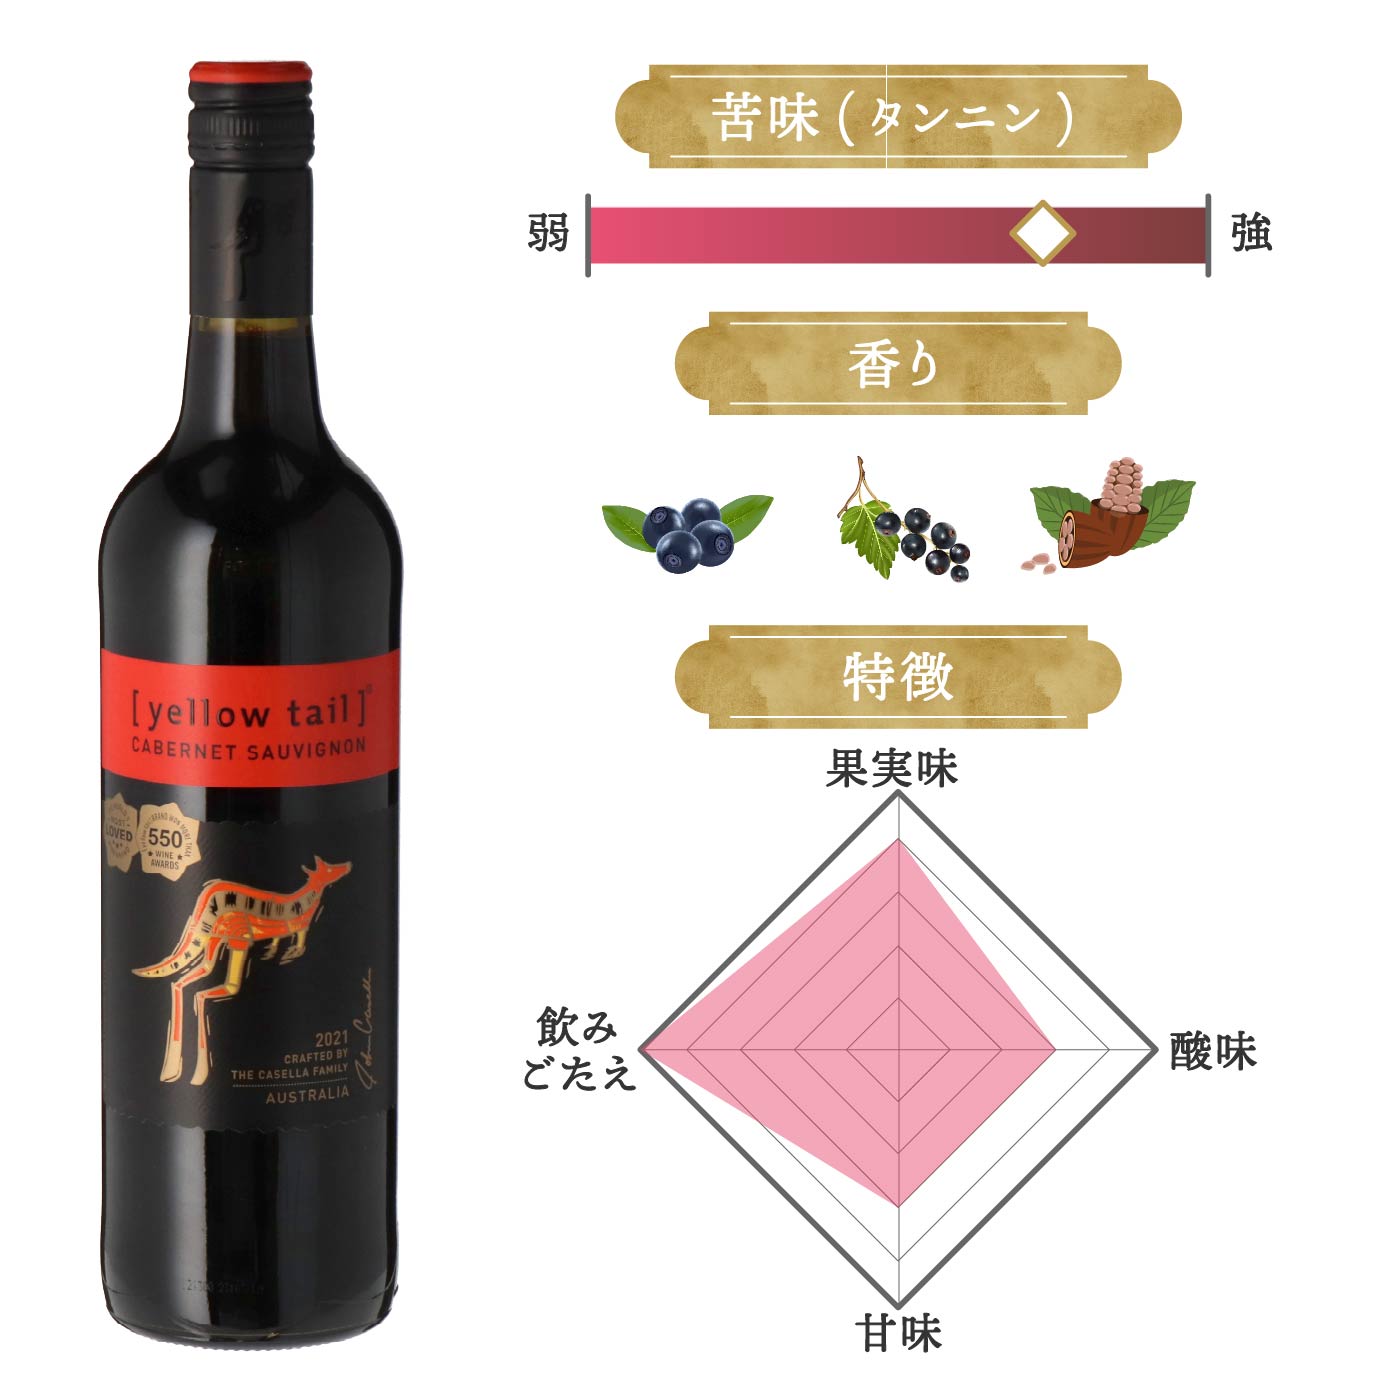 魅力の 赤ワイン オーストラリア カセラ イエローテイル カベルネ ソーヴィニヨン 2021 750ml